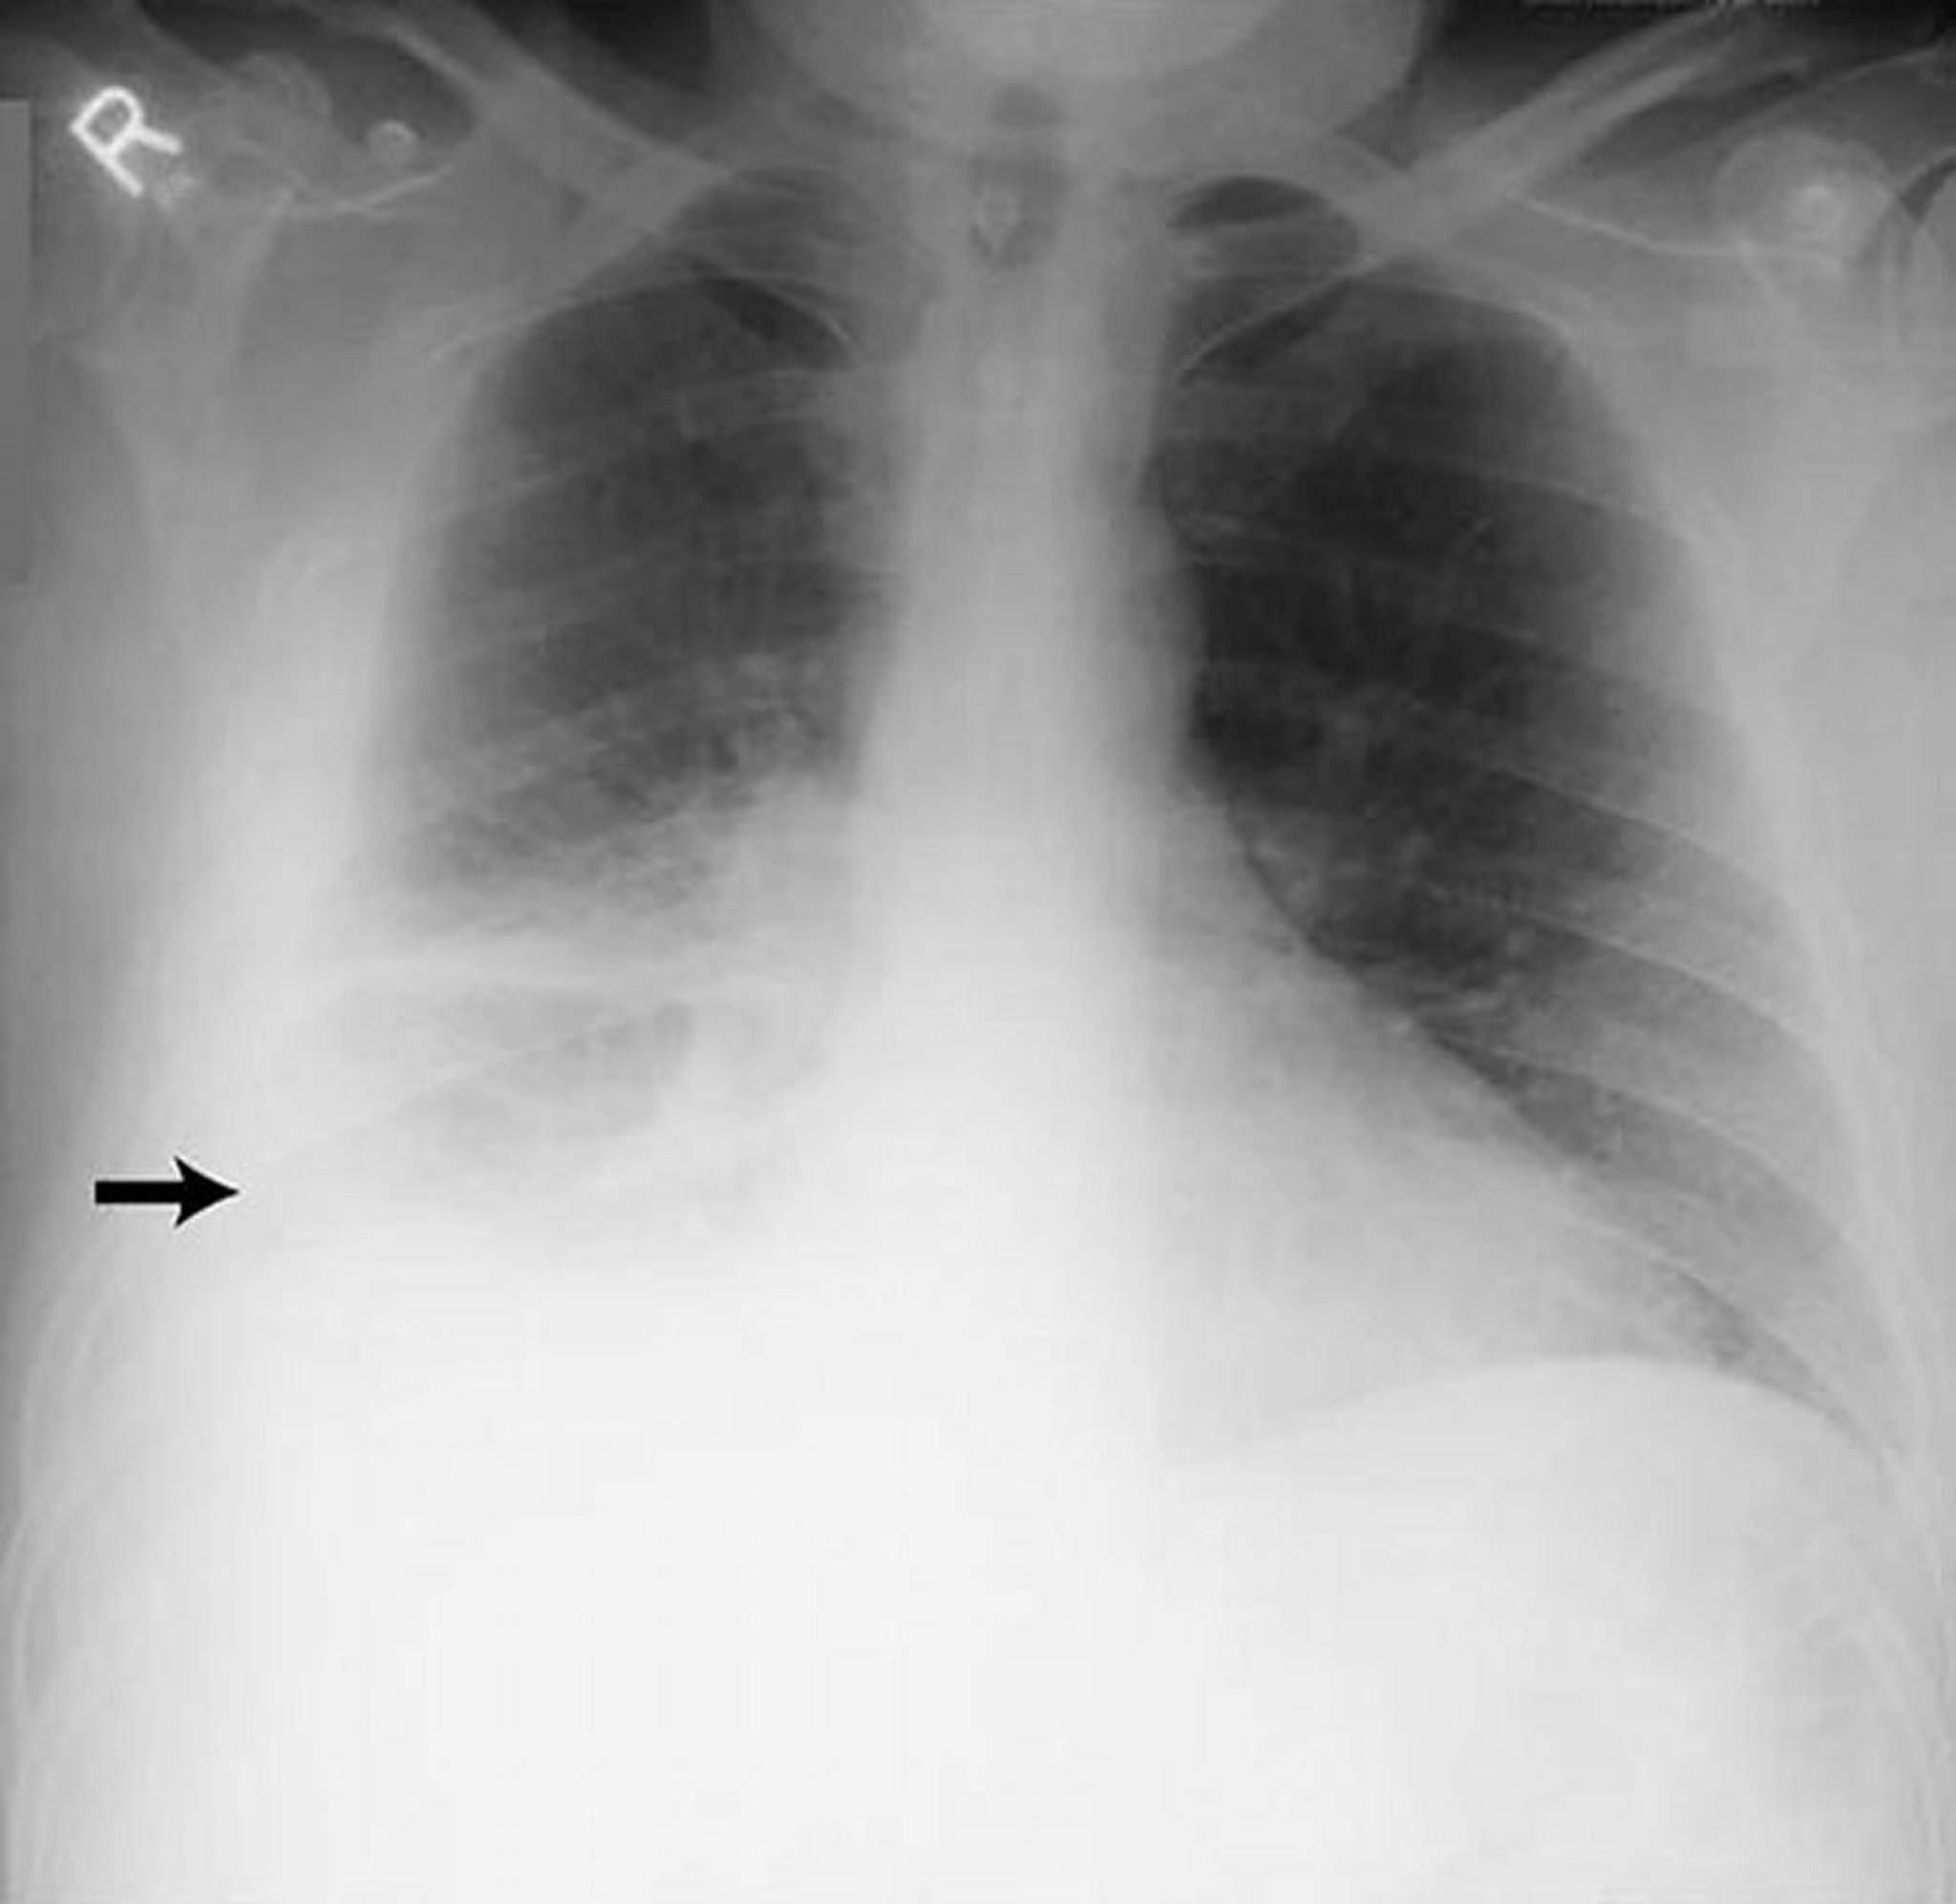 Tràn dịch màng phổi – Nhiều